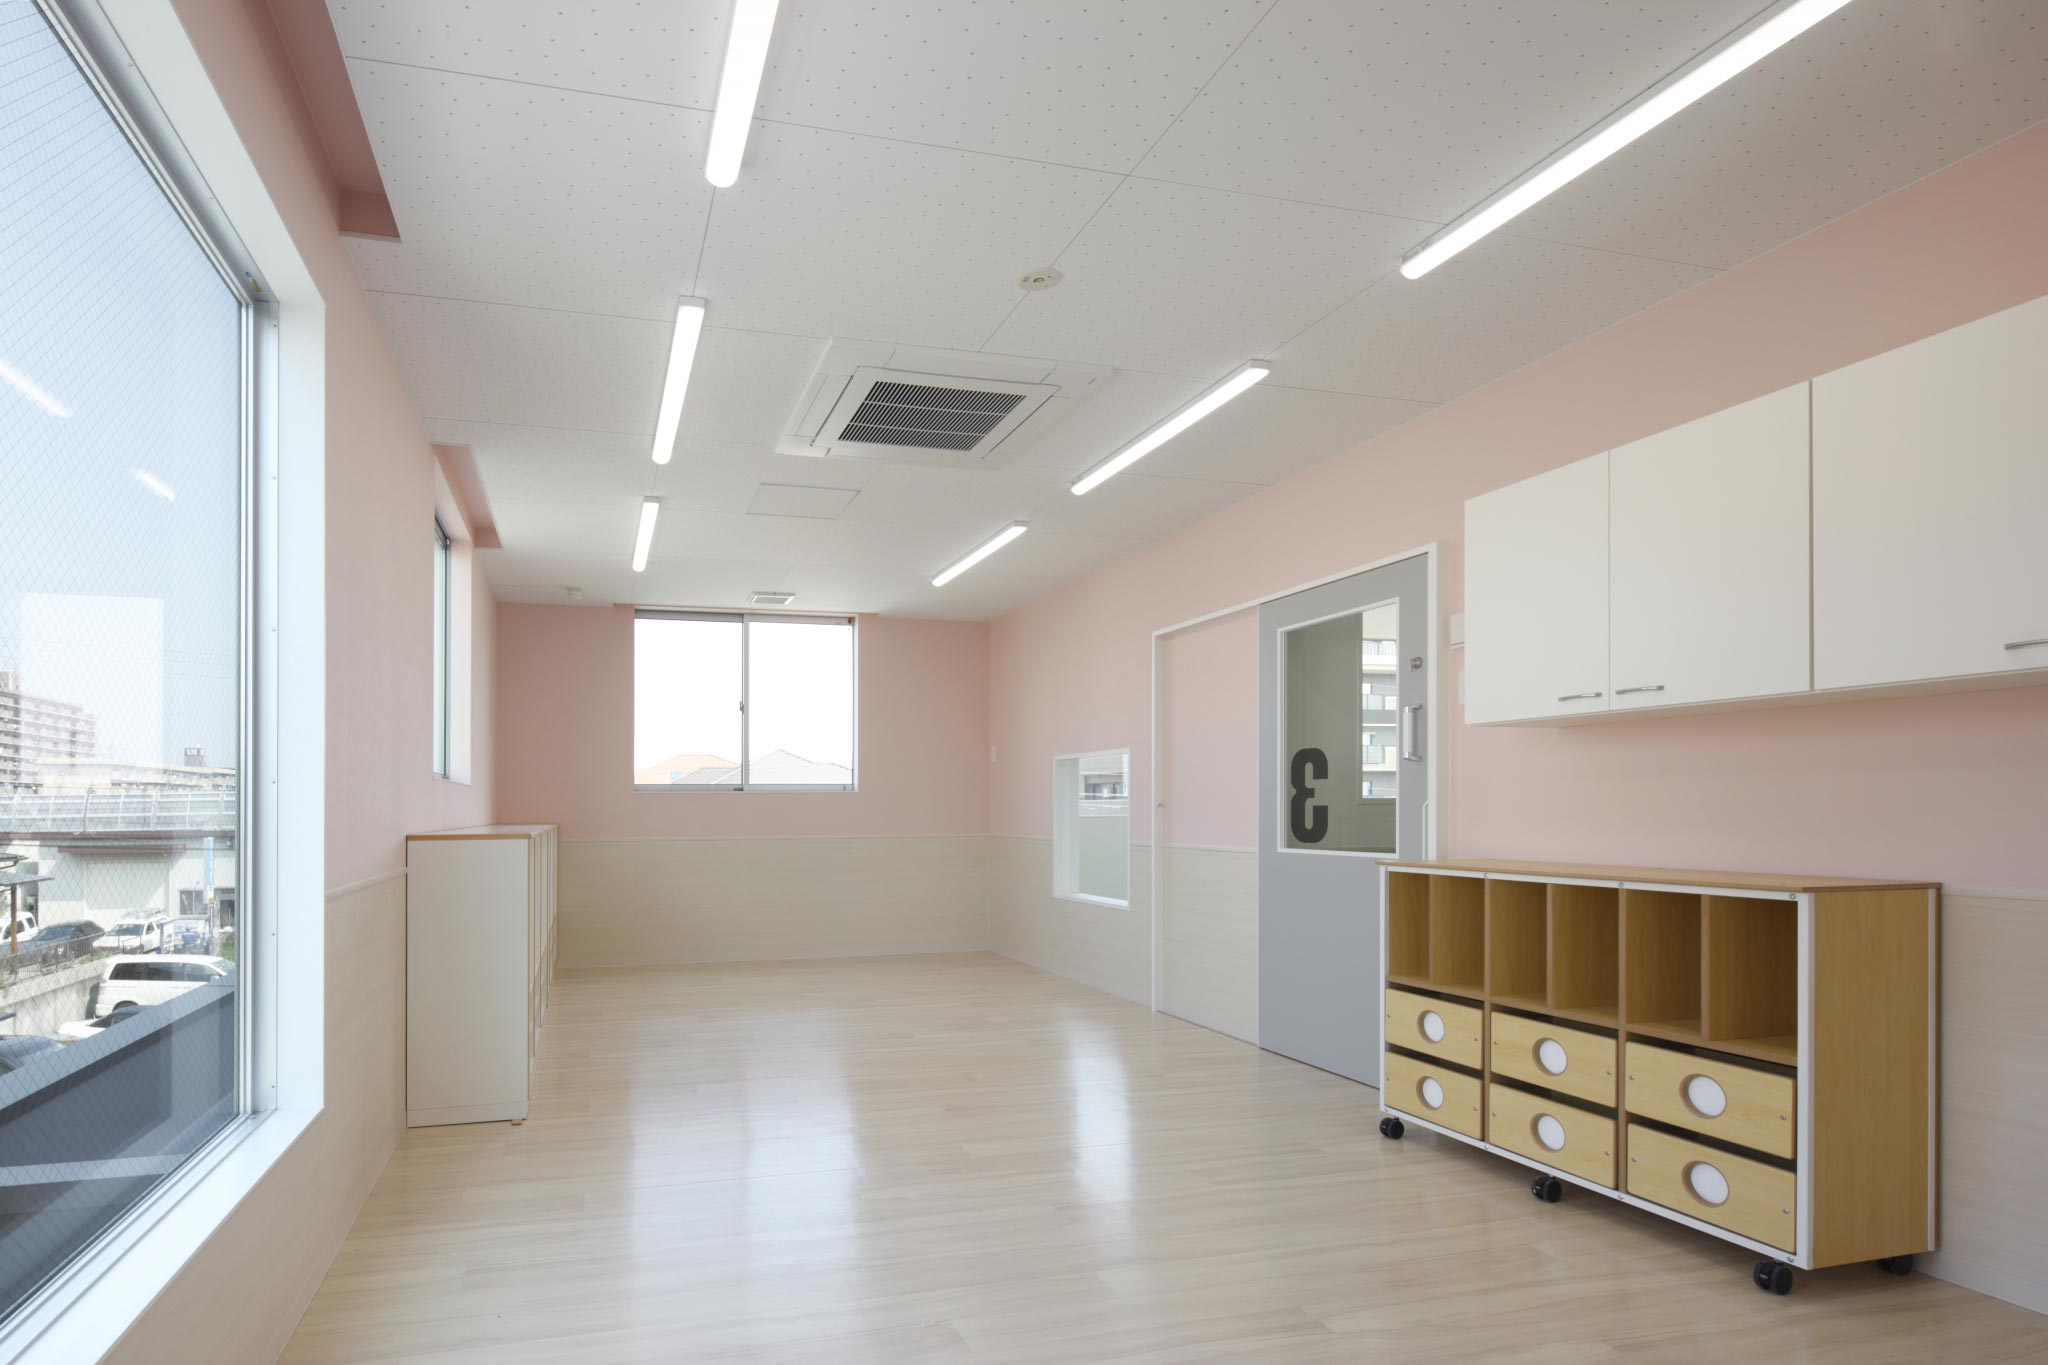 名古屋市天白区の保育施設の大きな窓があり明るいピンク色の保育室